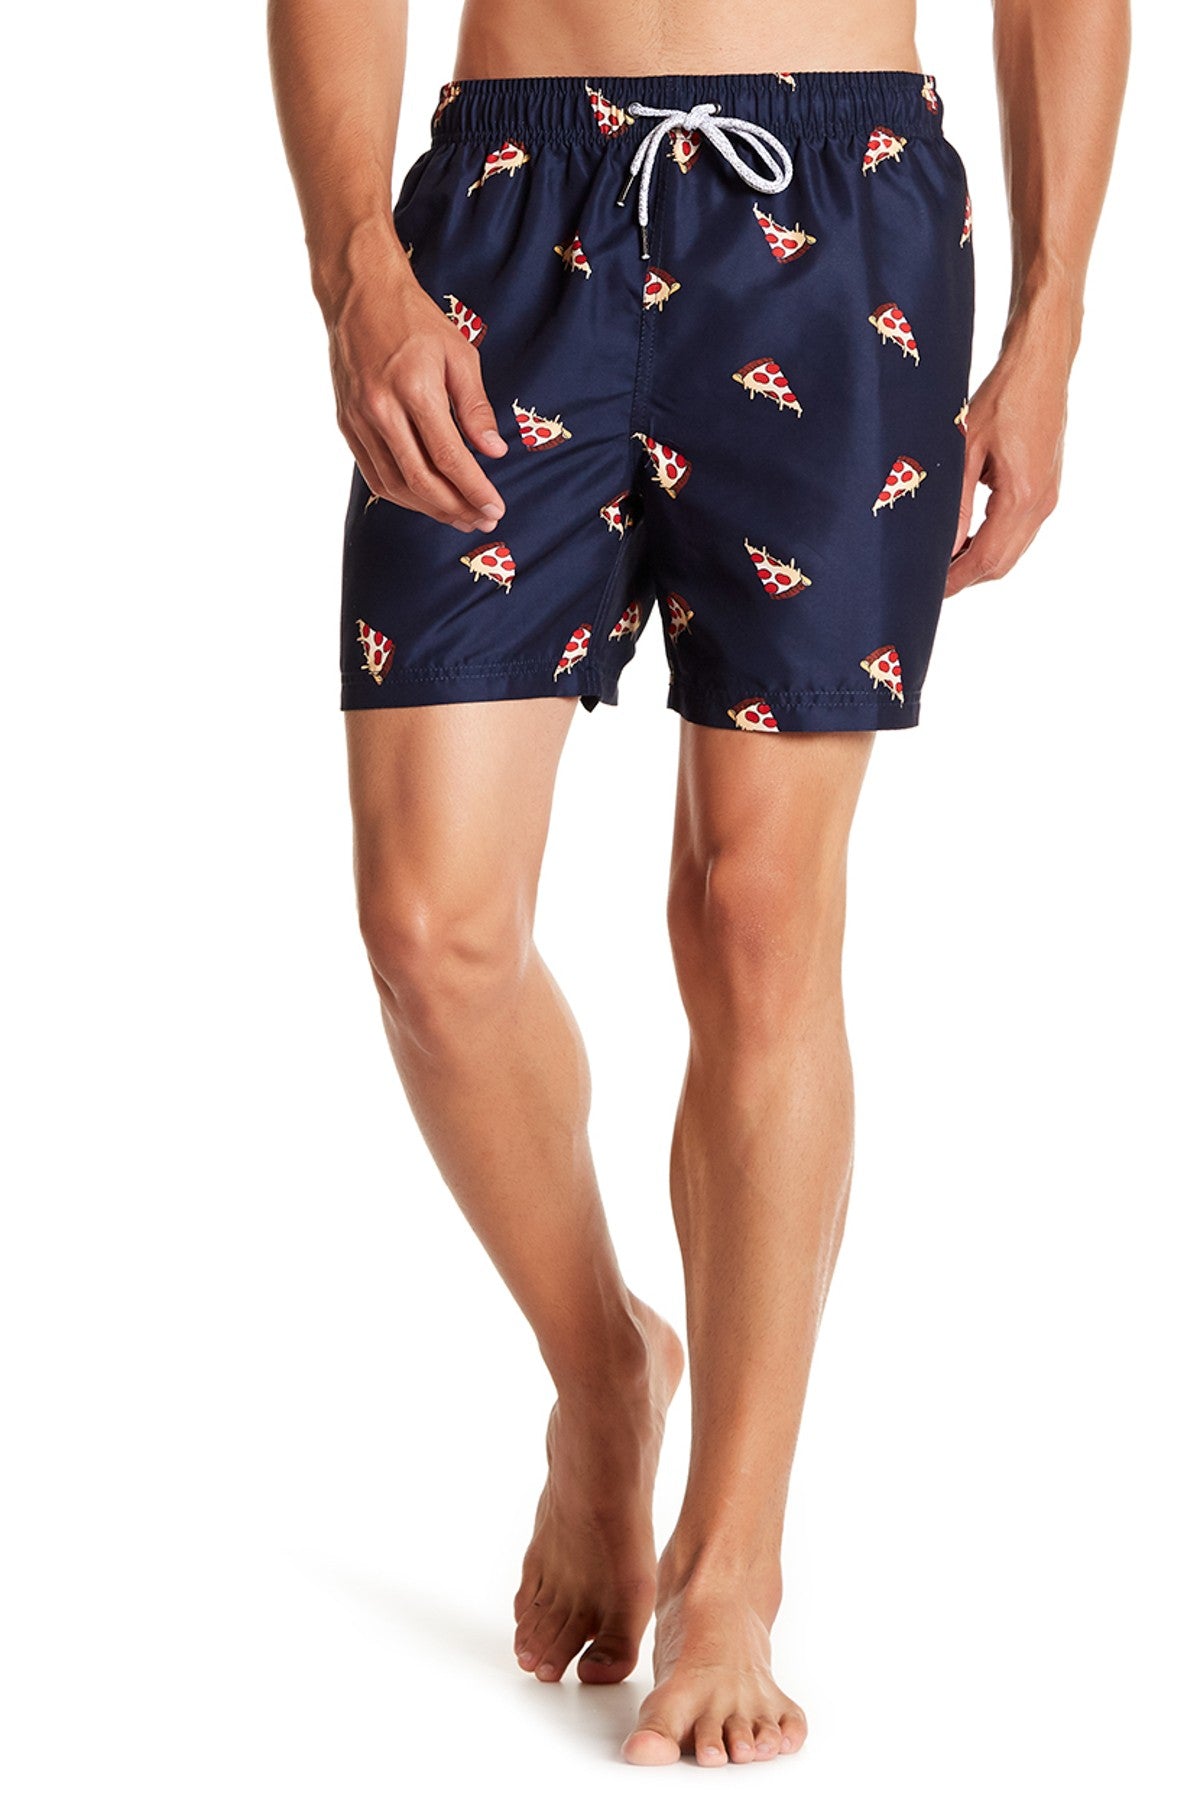 Hawaiian Shirt for Mens | Flamingo Short Sleeve Shirt | VisiveClothing